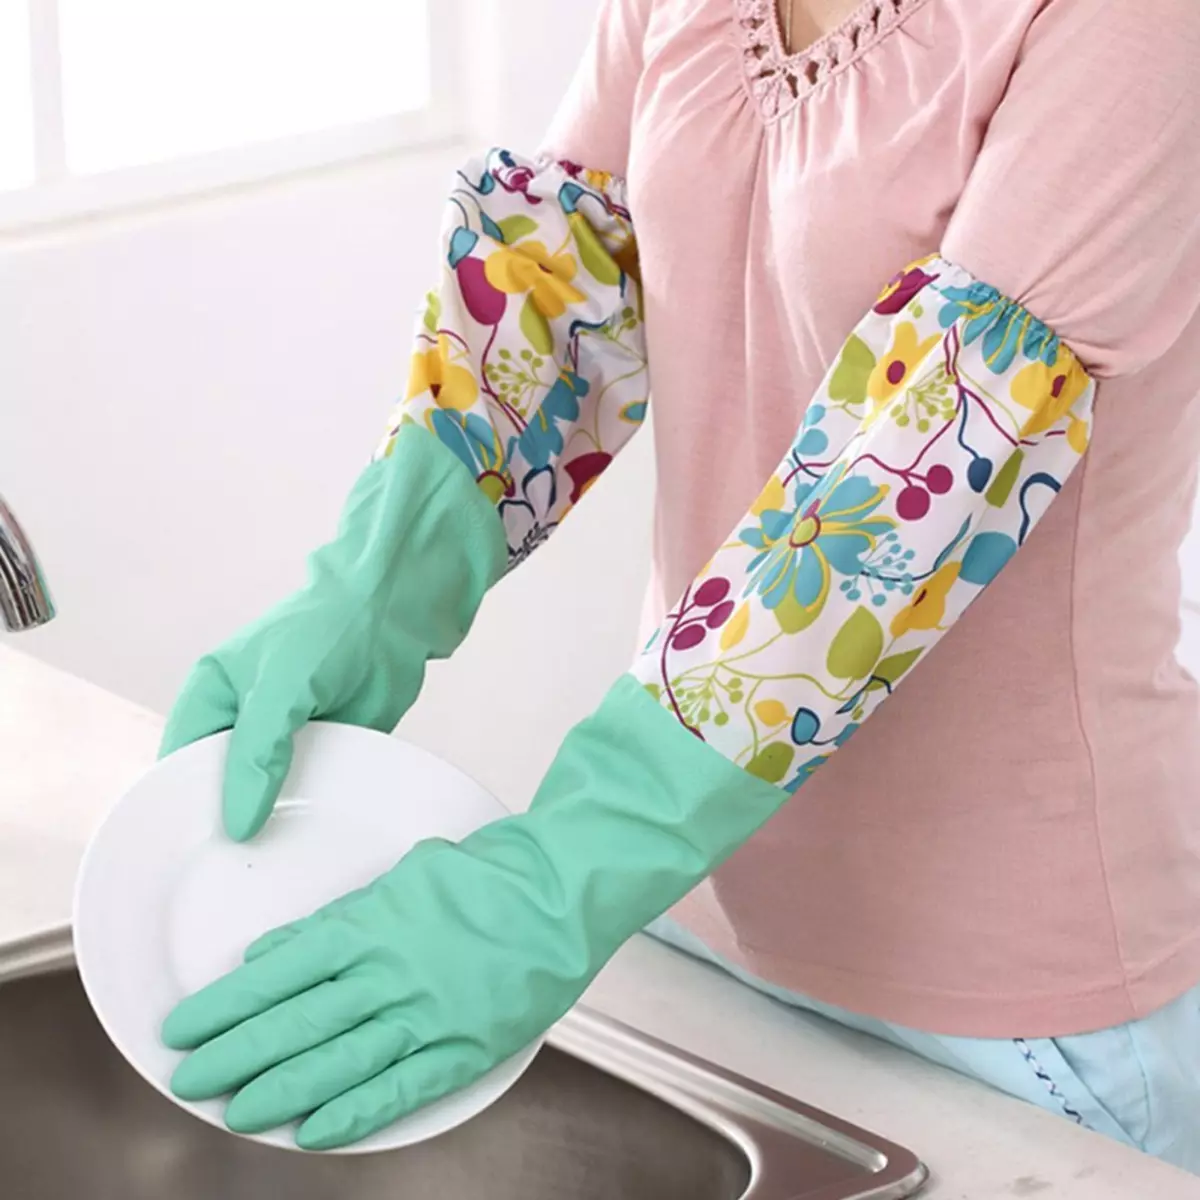 Handschoenen voor het reinigen